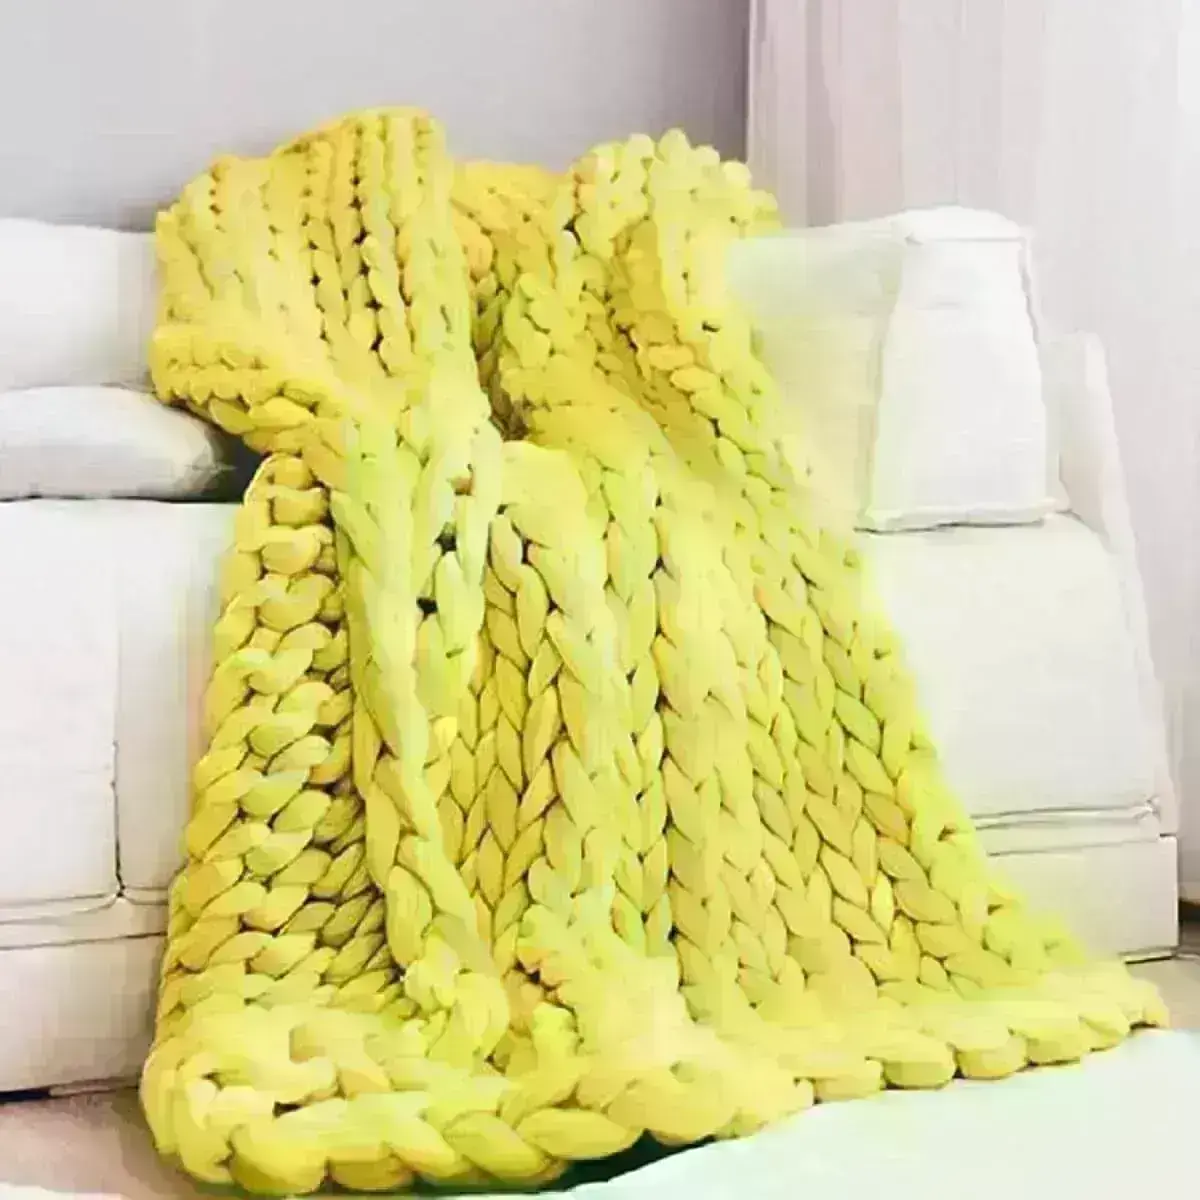 Sofá decorado com manta de crochê amarela Foto Revista Artesanato